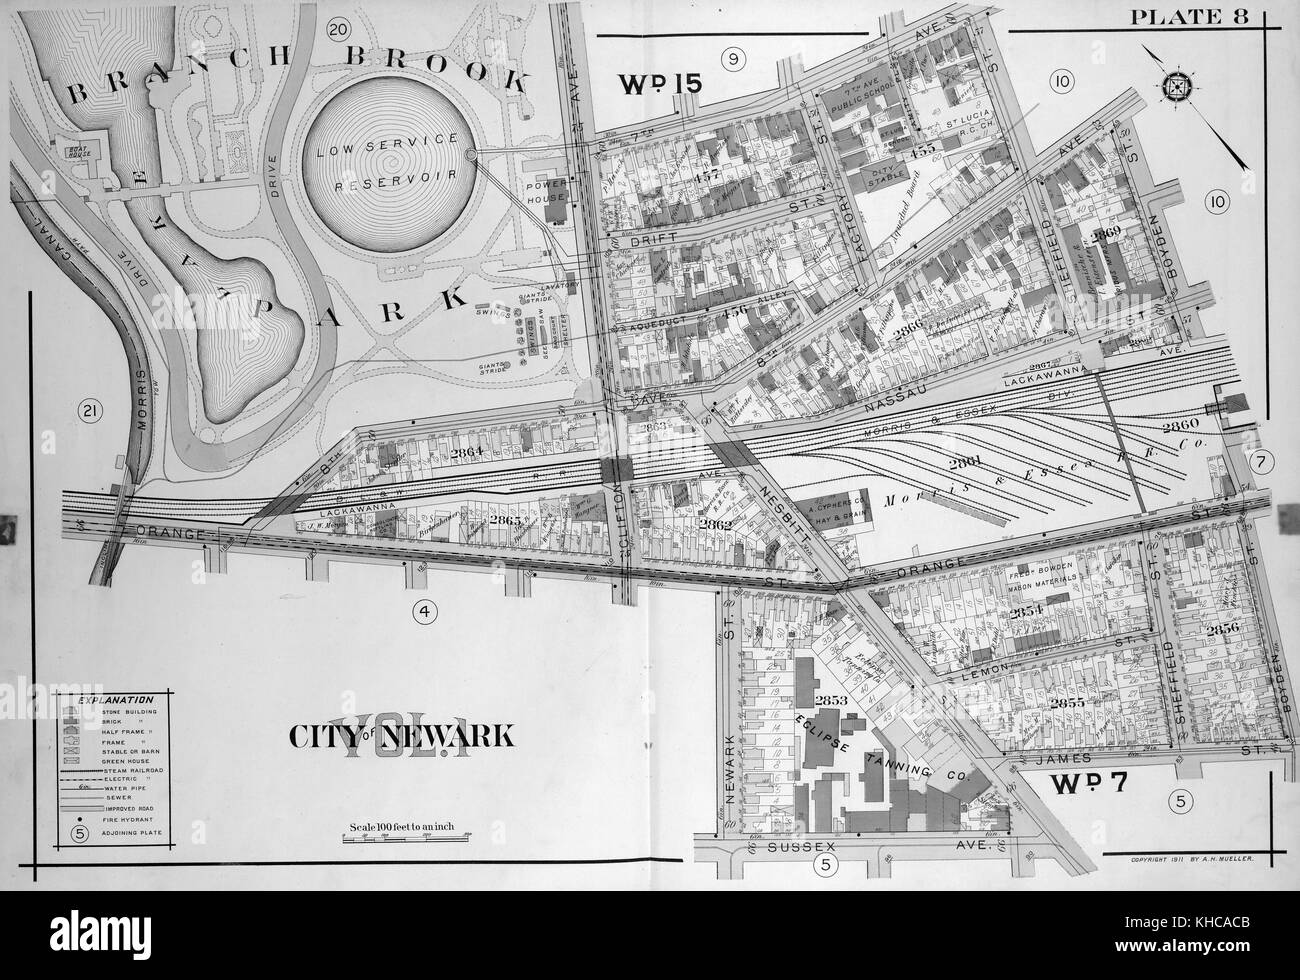 Une double page d'une carte d'impression, dispose d'un codage couleur pour fournir des informations sur les bâtiments et les infrastructures, à Newark, New Jersey, 1911. à partir de la bibliothèque publique de new york. Banque D'Images